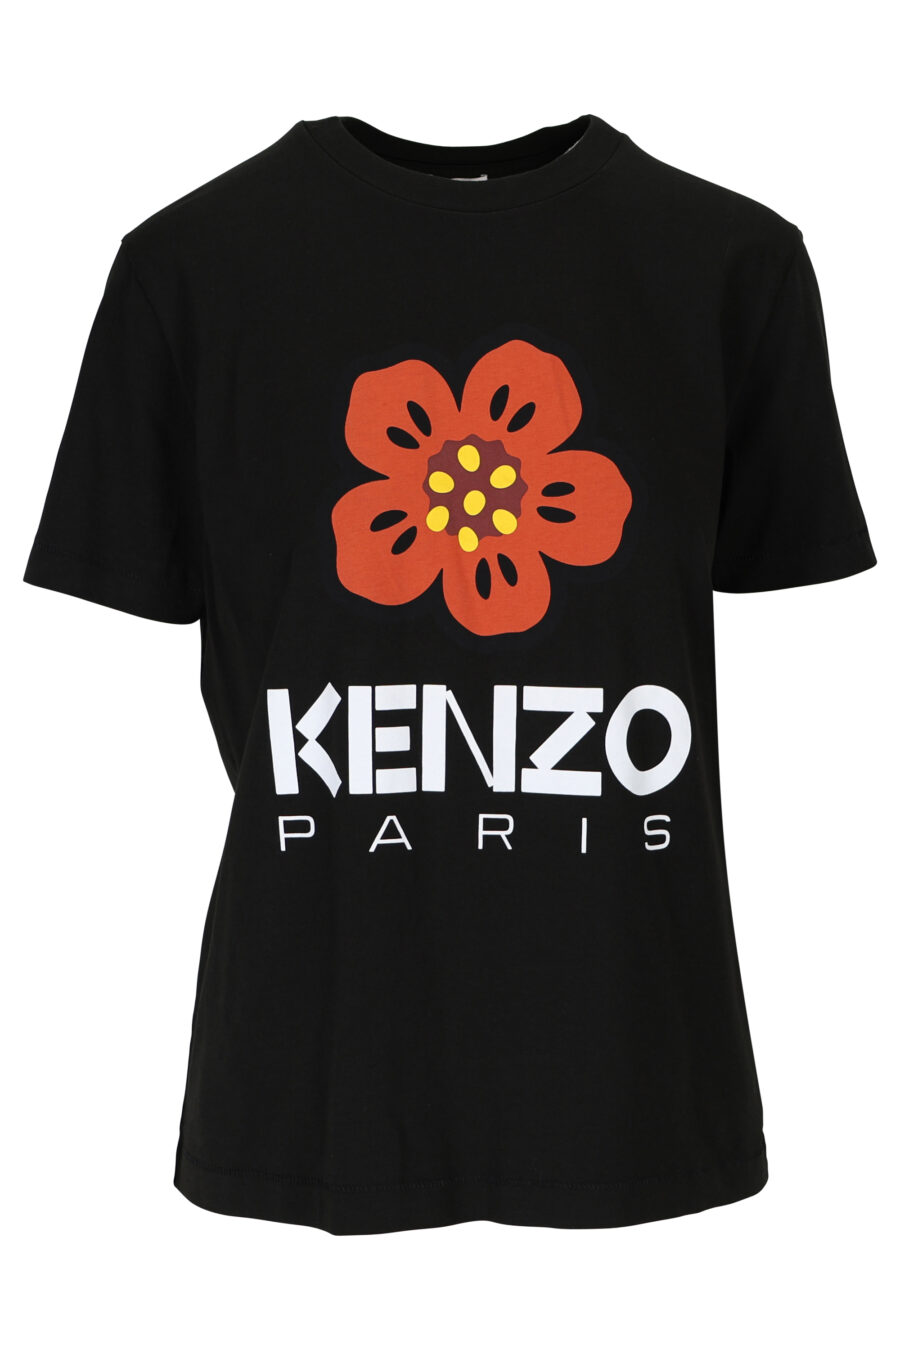 T-shirt preta com maxilogo "boke flower" - 3612230483170